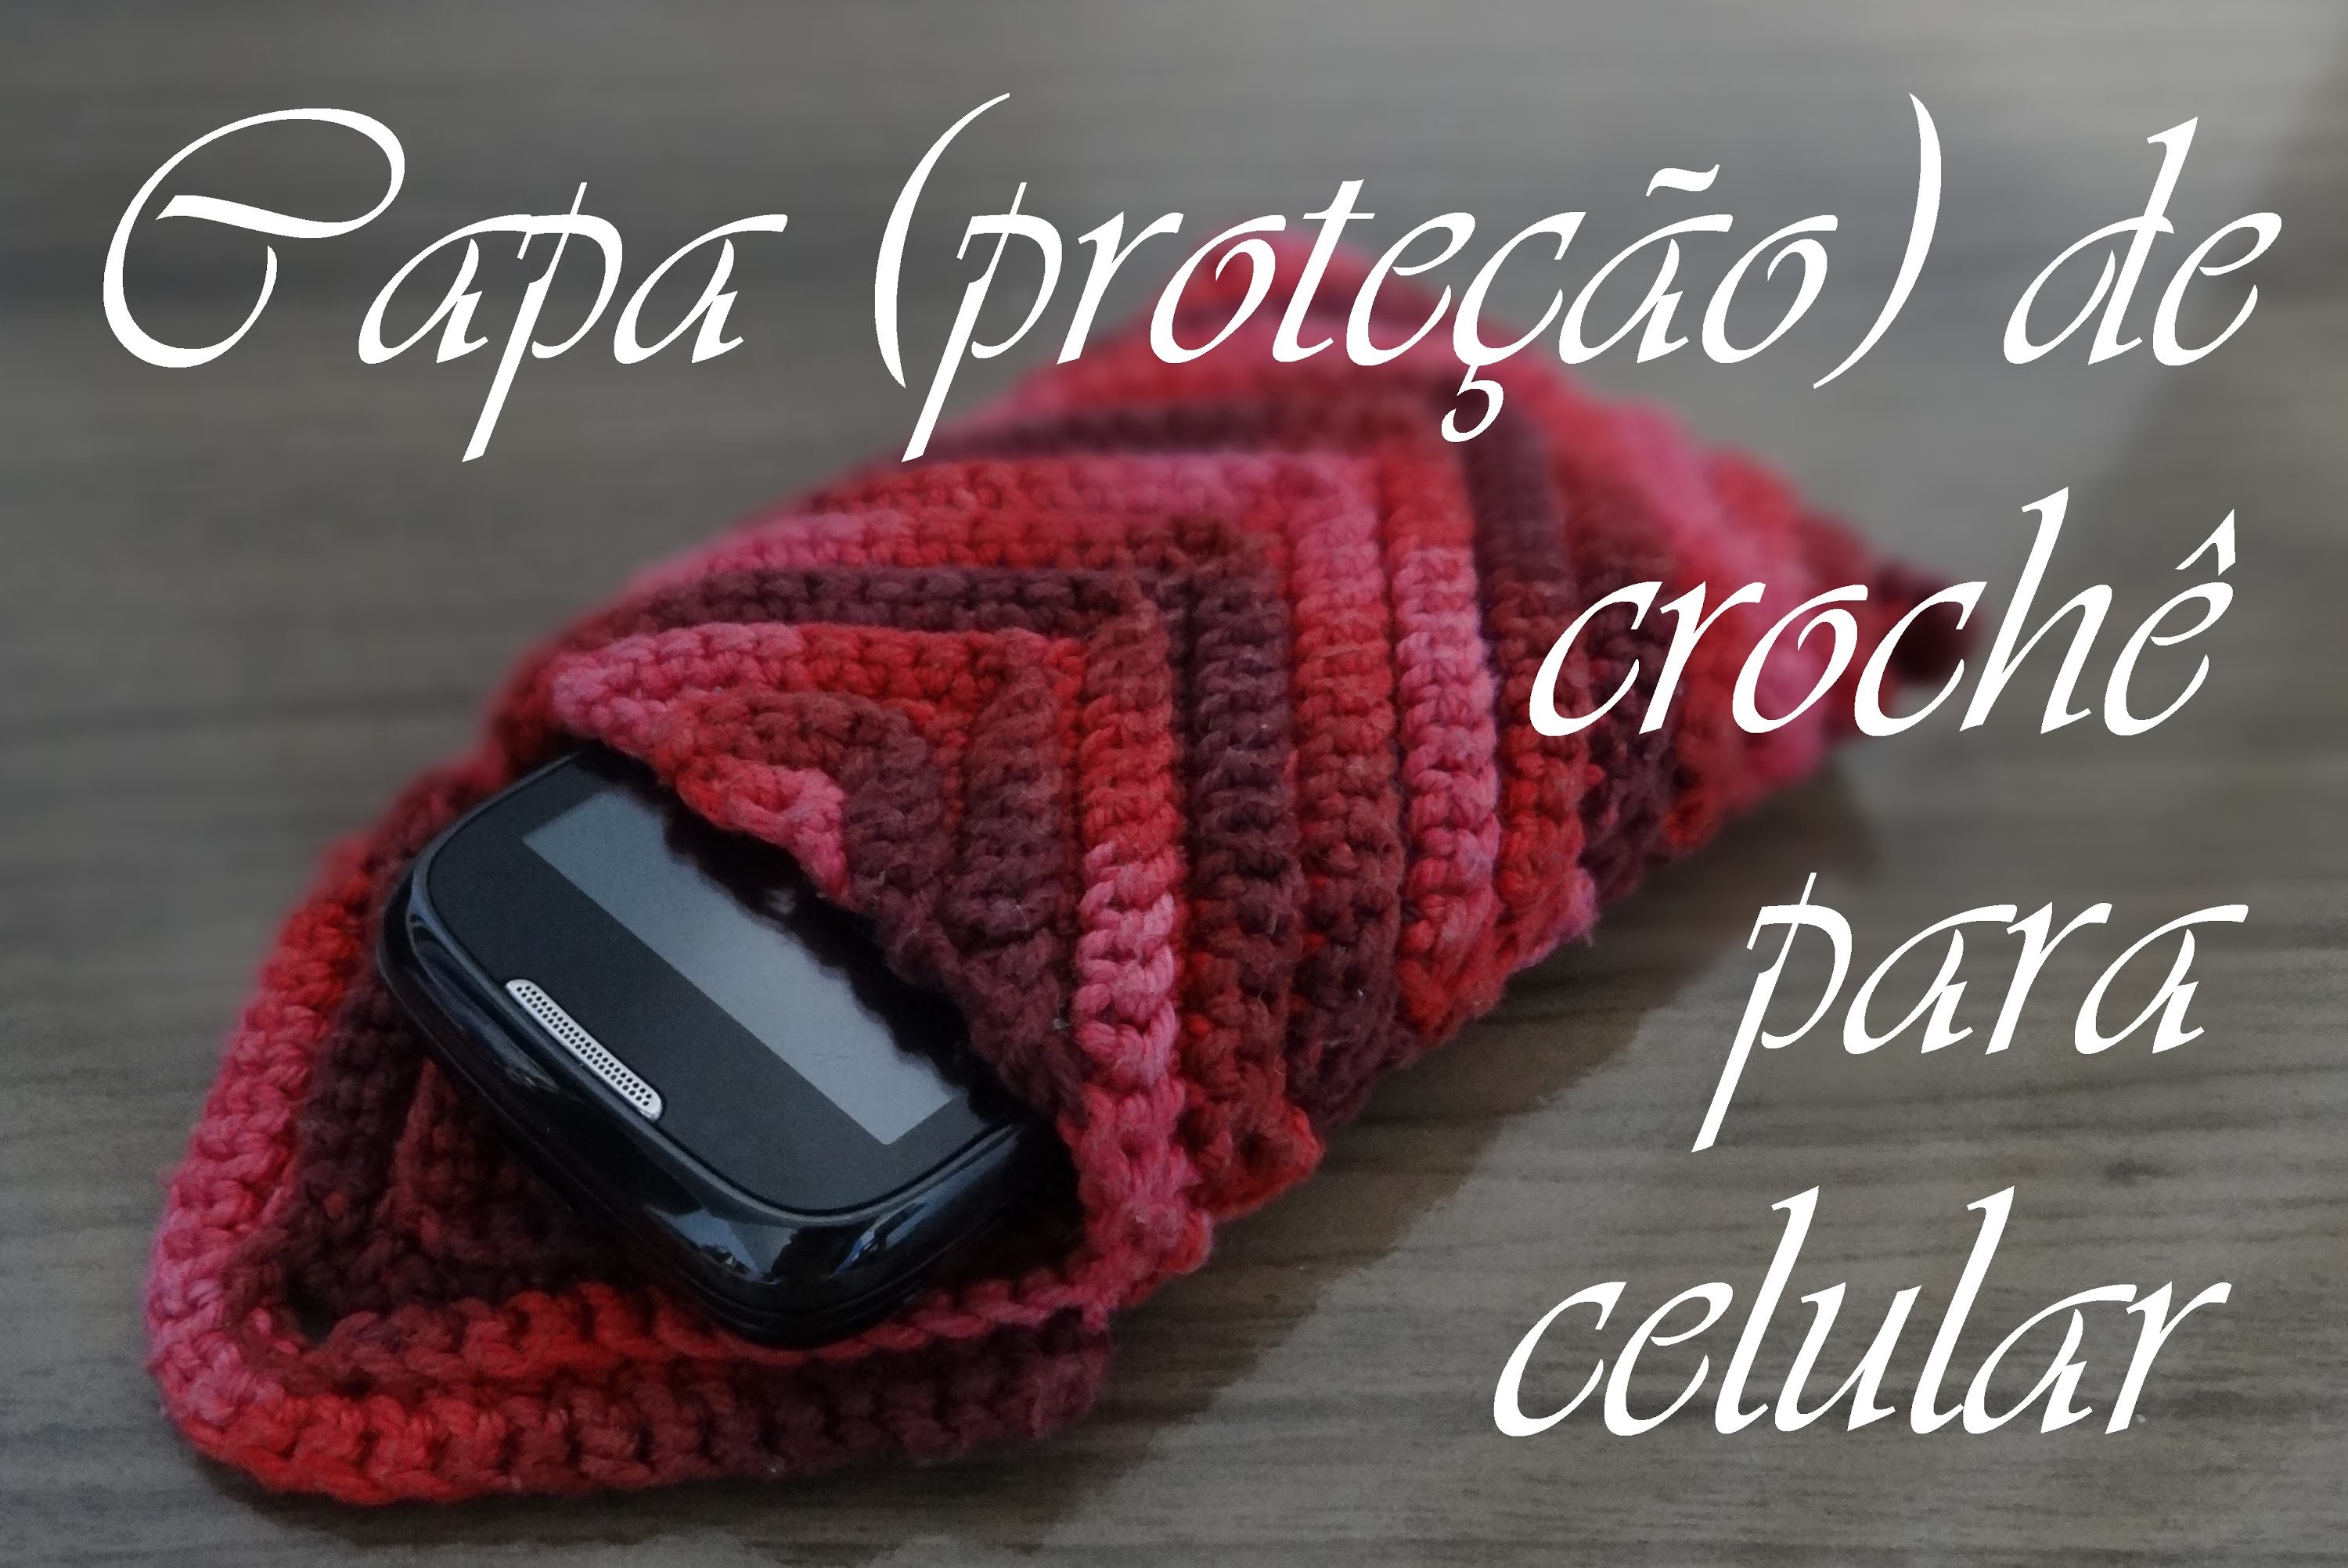 Capa (proteção) de crochê para celular | Passo-a-passo